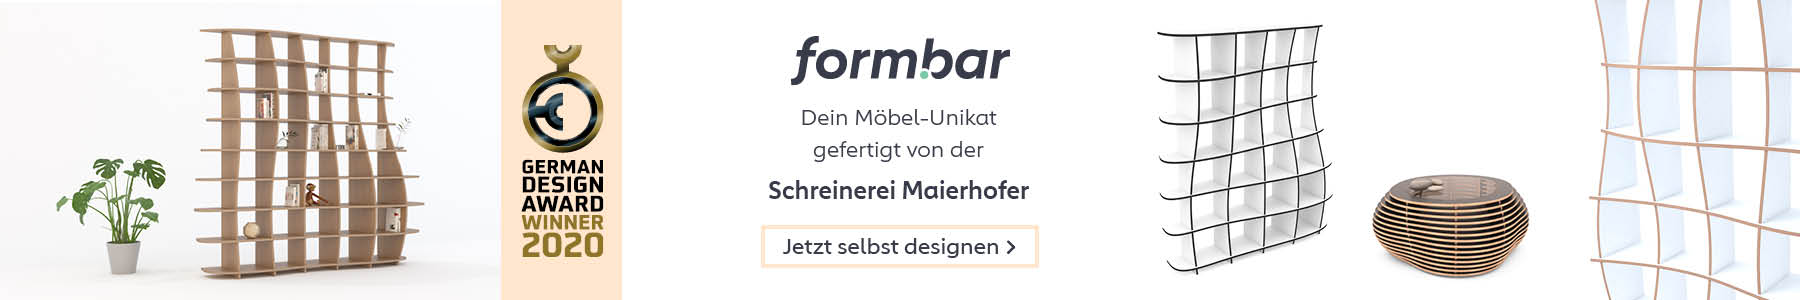 formbar Banner